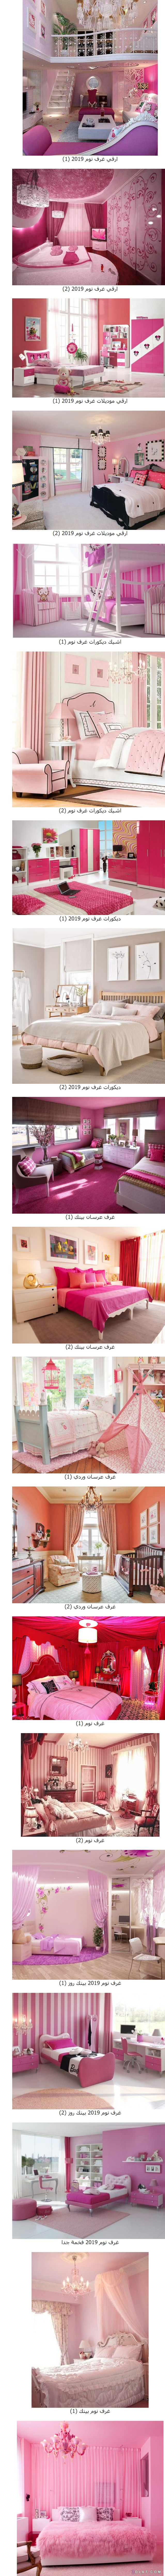 غرف نوم بألوان جذابة ورائعة ،ديكورات غرف نوم باللون الوردي